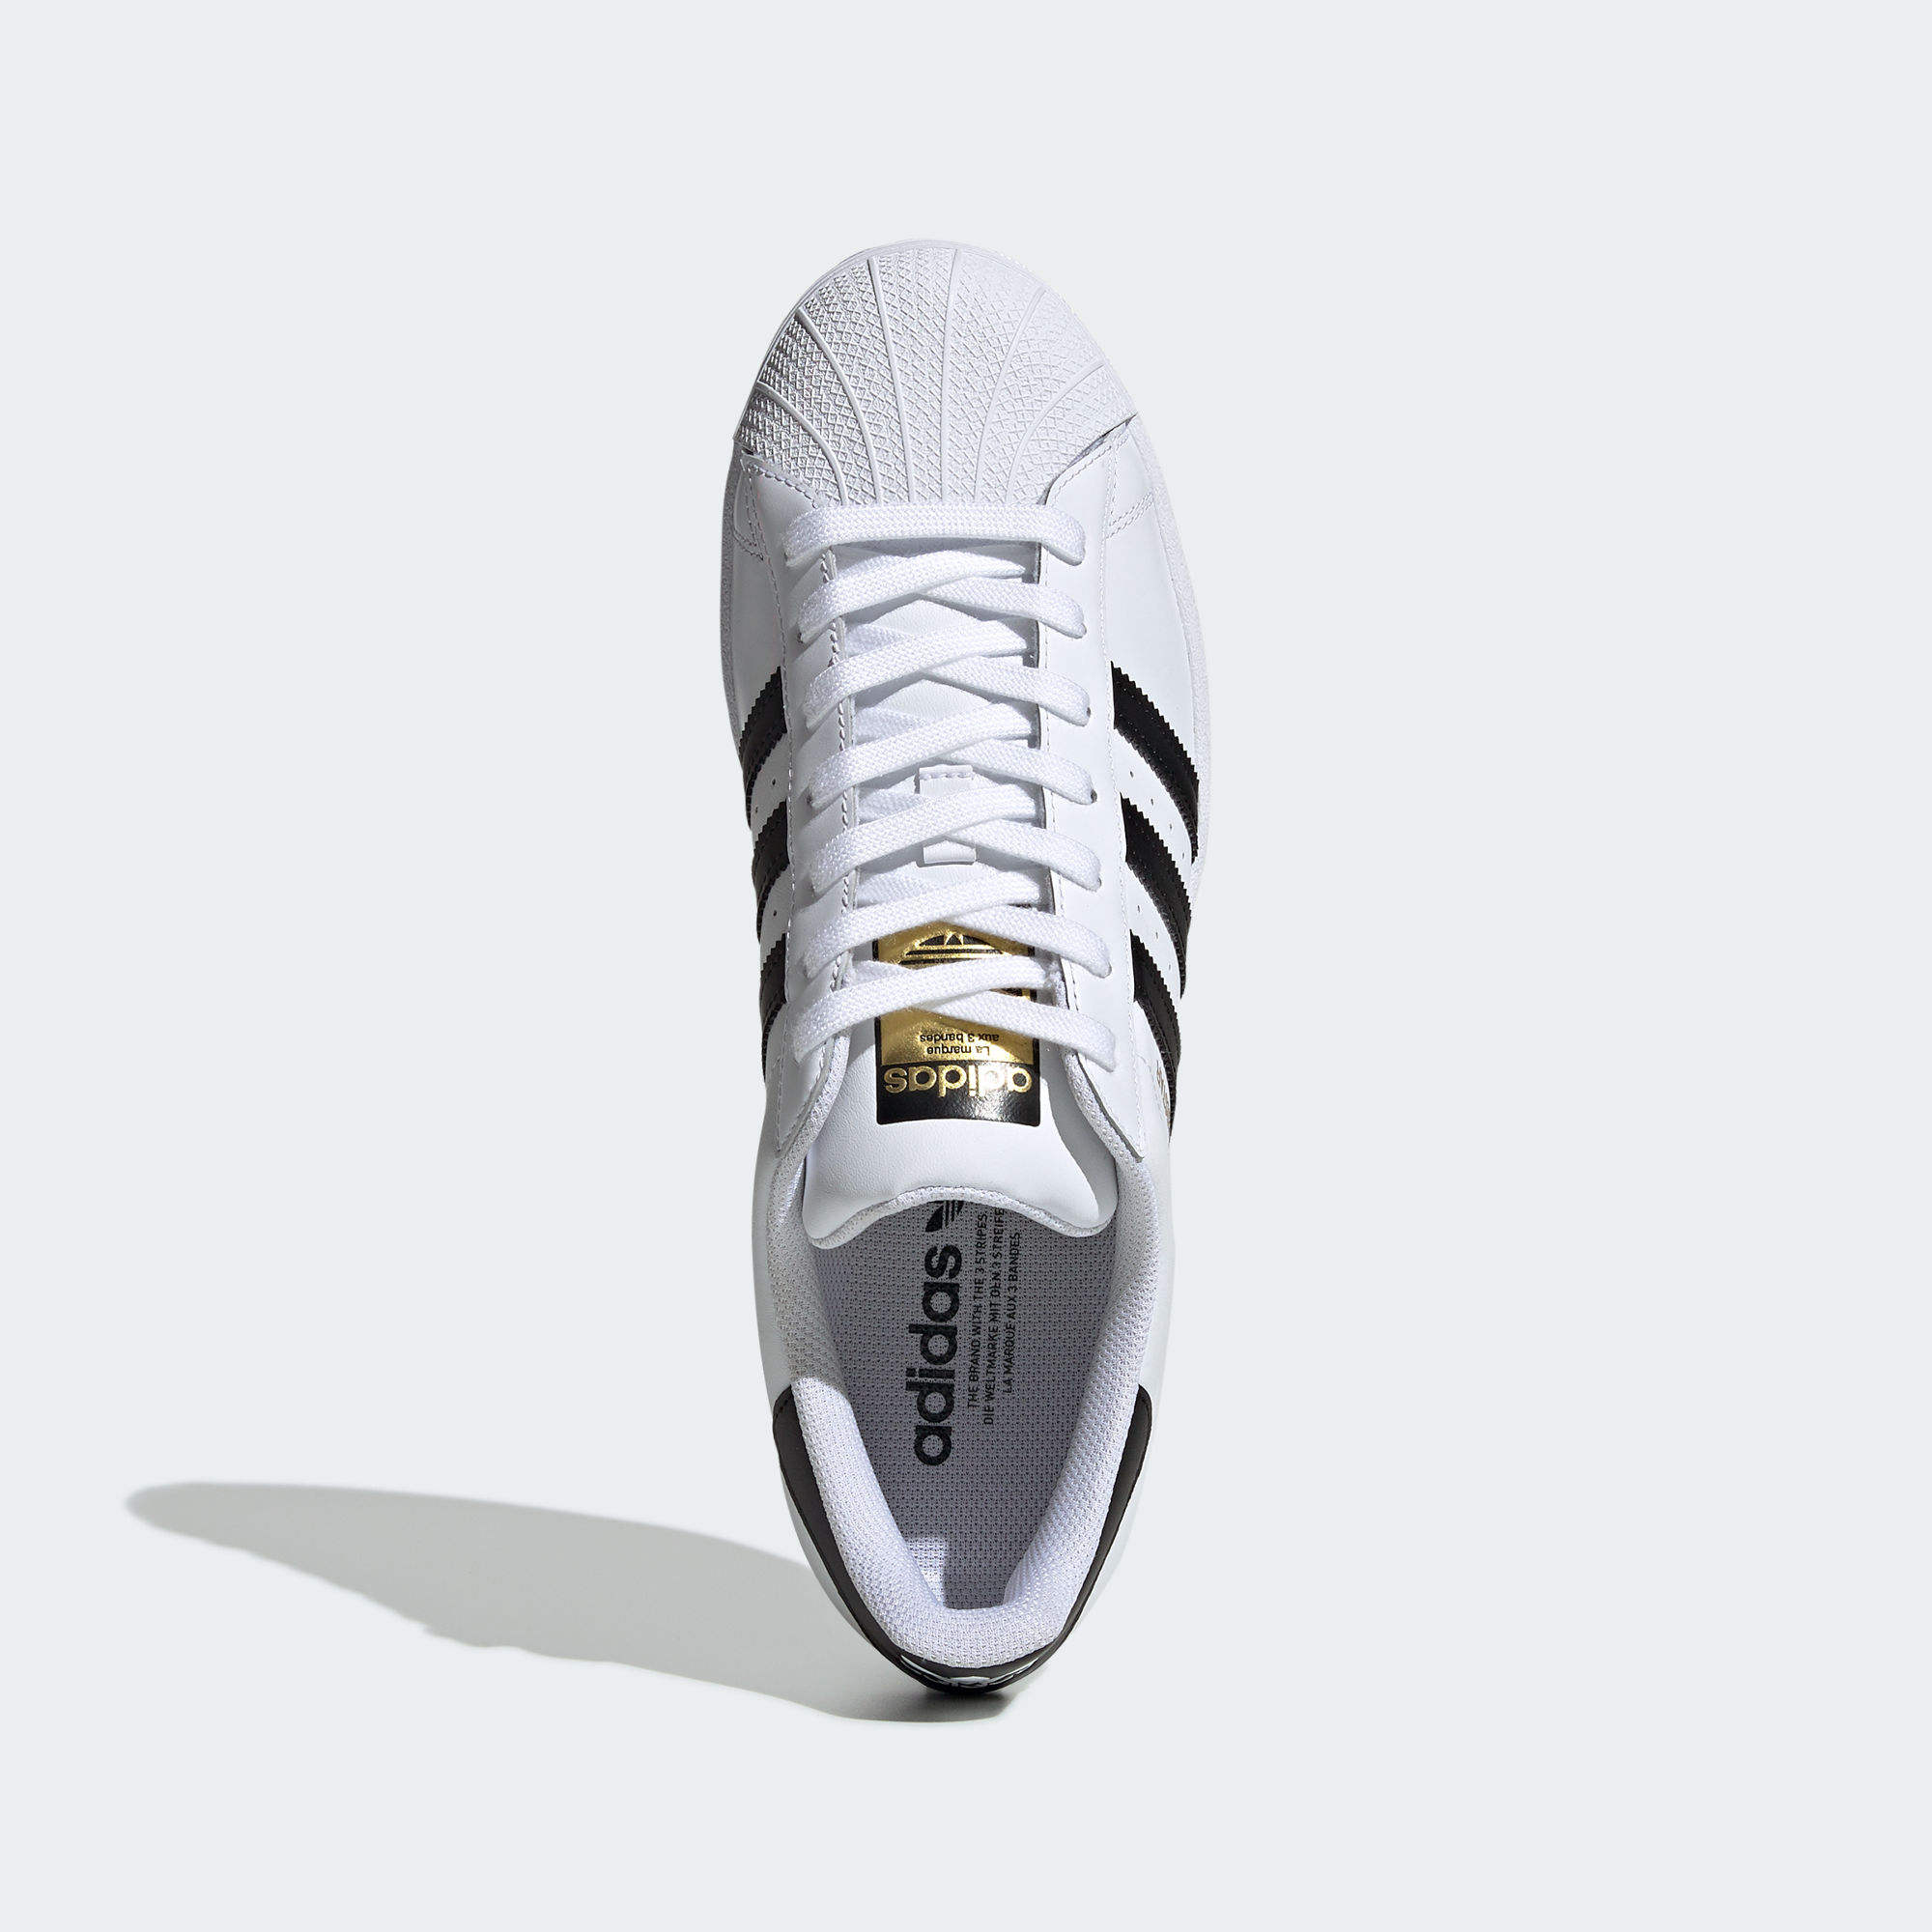 運動鞋- 白色| 男子,女子| adidas(愛迪達)香港官方網上商店